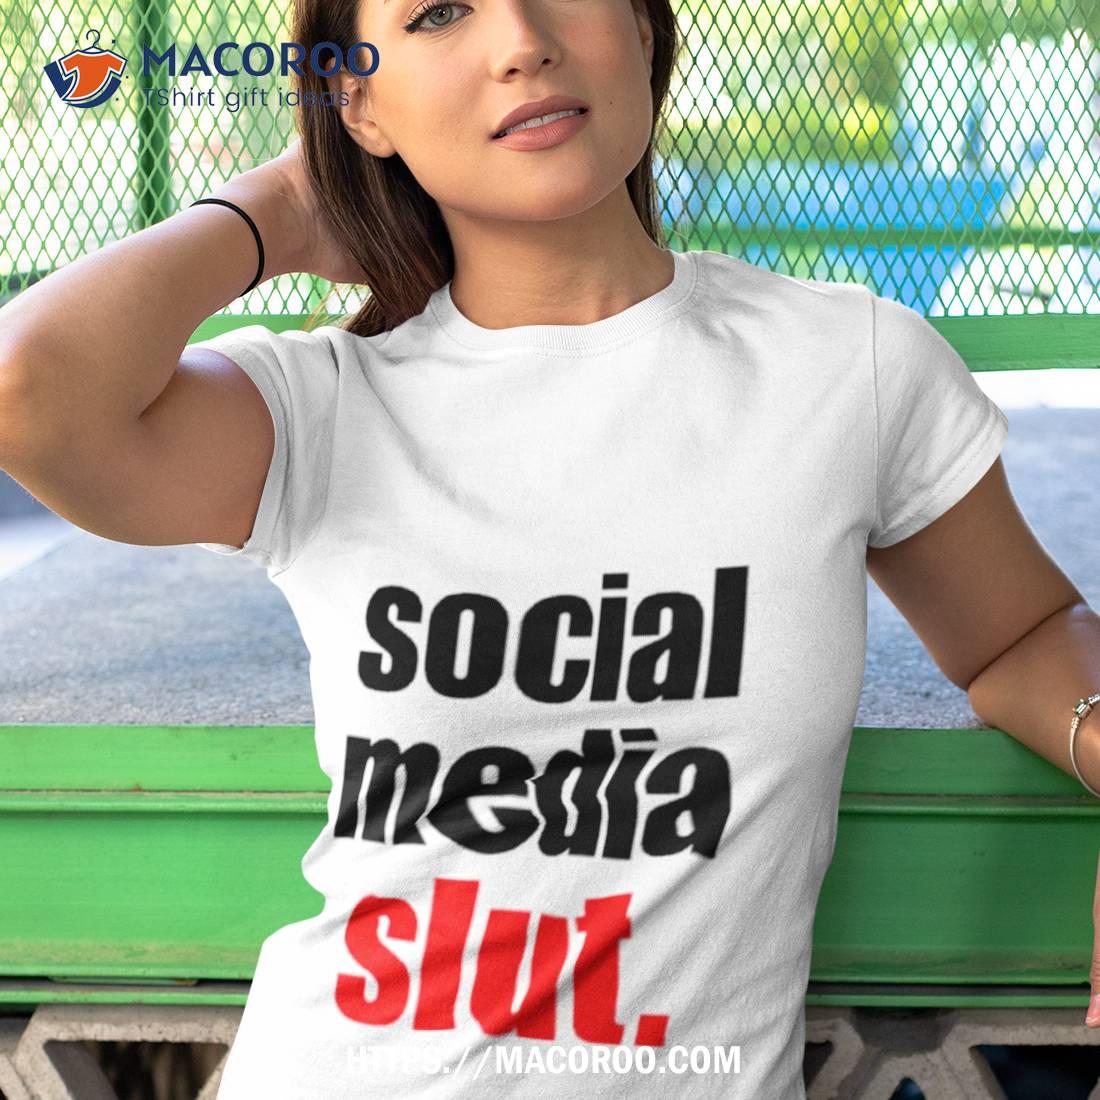 Social media sluts